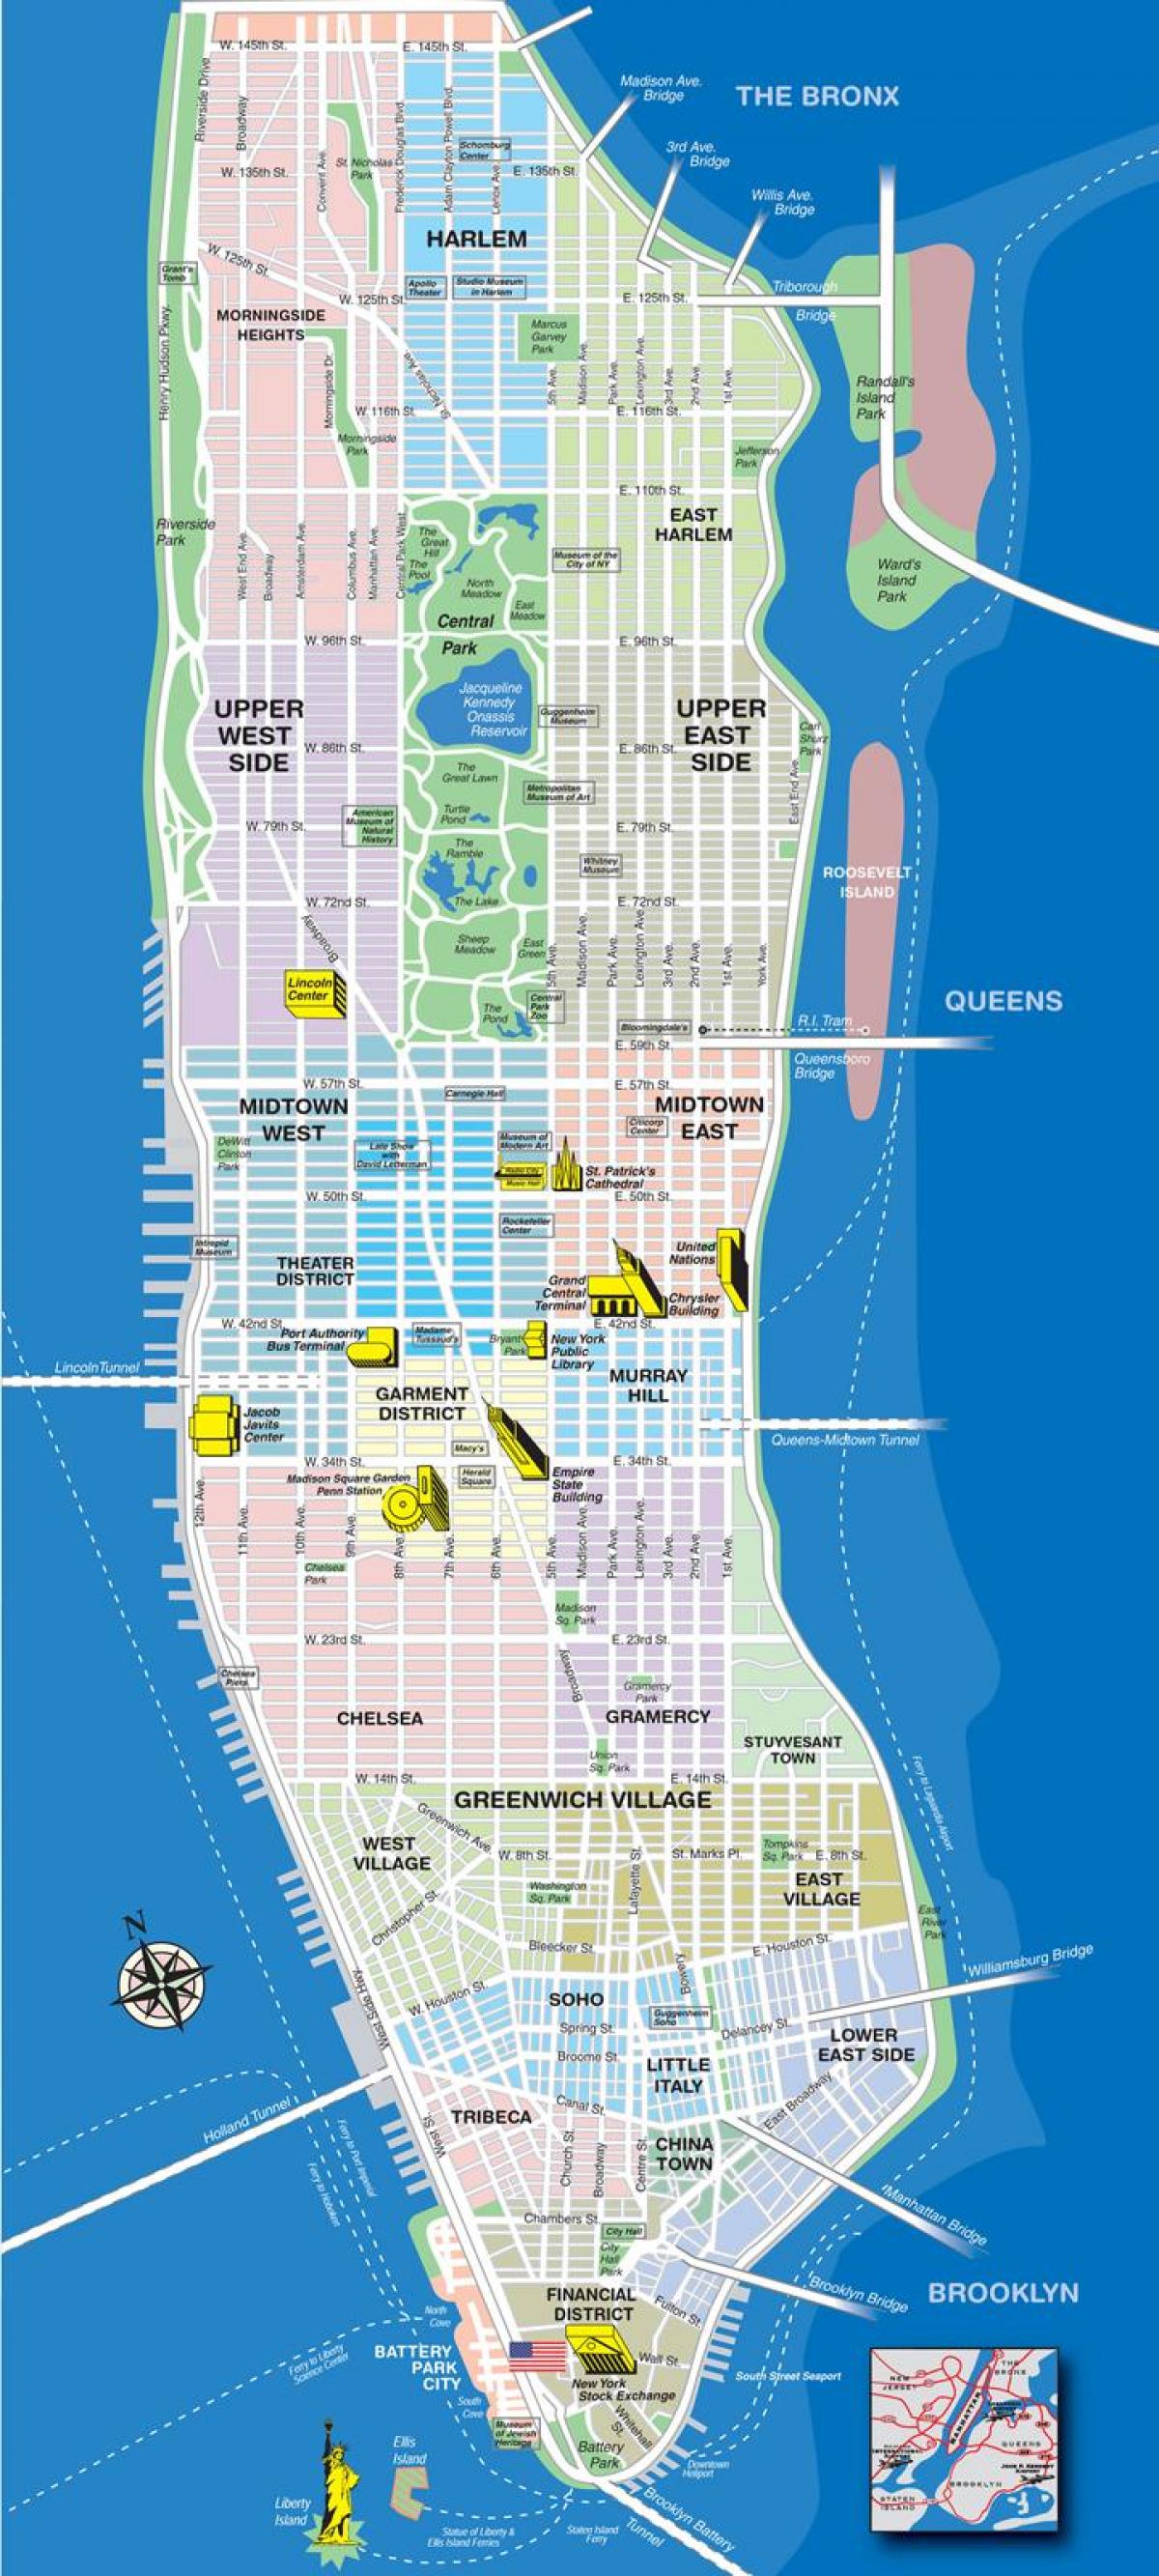 žemėlapiai Manhetene, niujorke